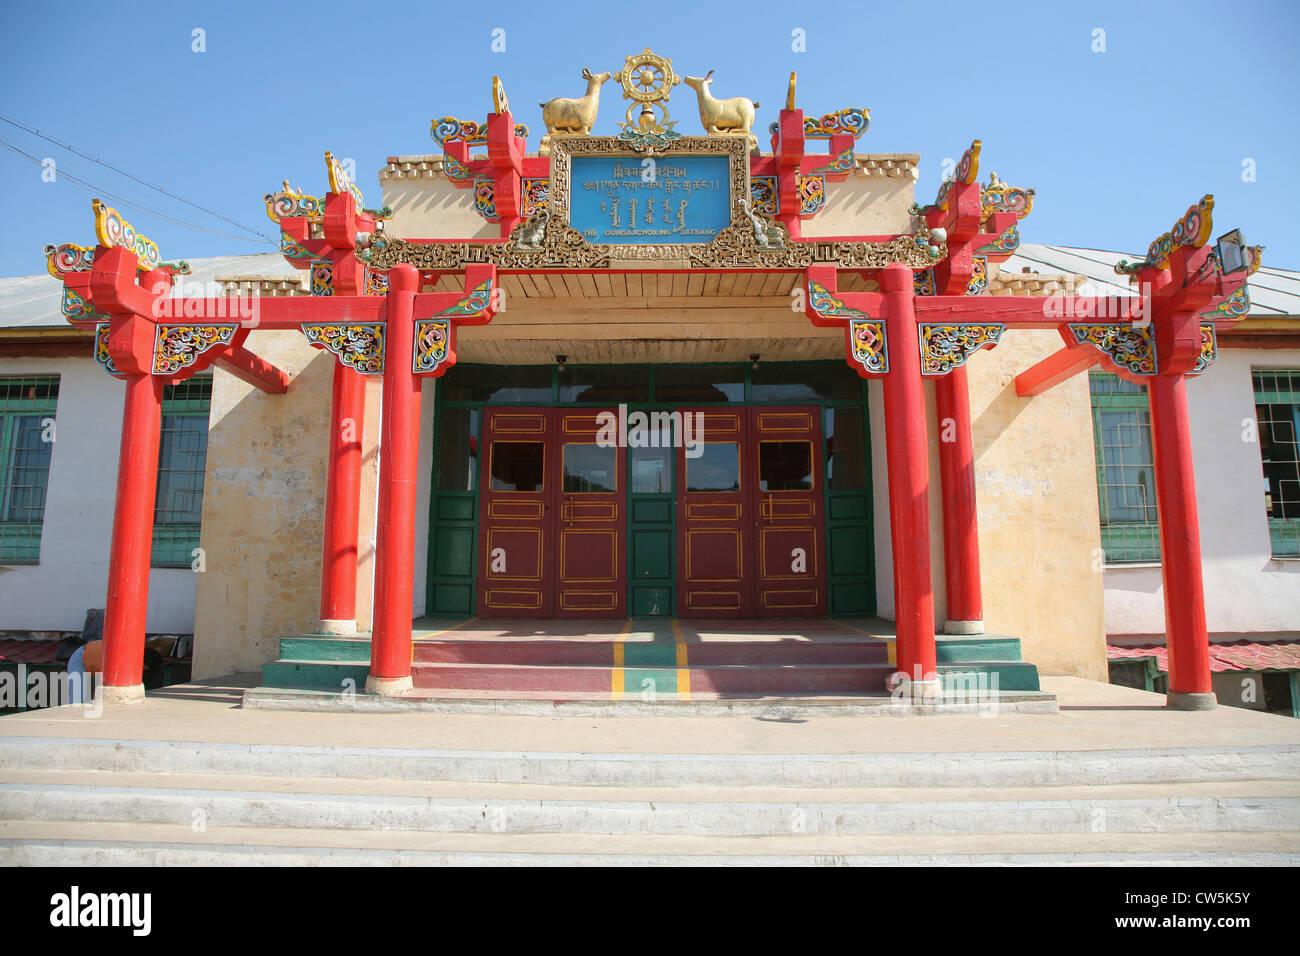 Façade d'un monastère, Monastère Gandantegchinlen Khiid, Ulan Bator, Mongolie indépendante Banque D'Images